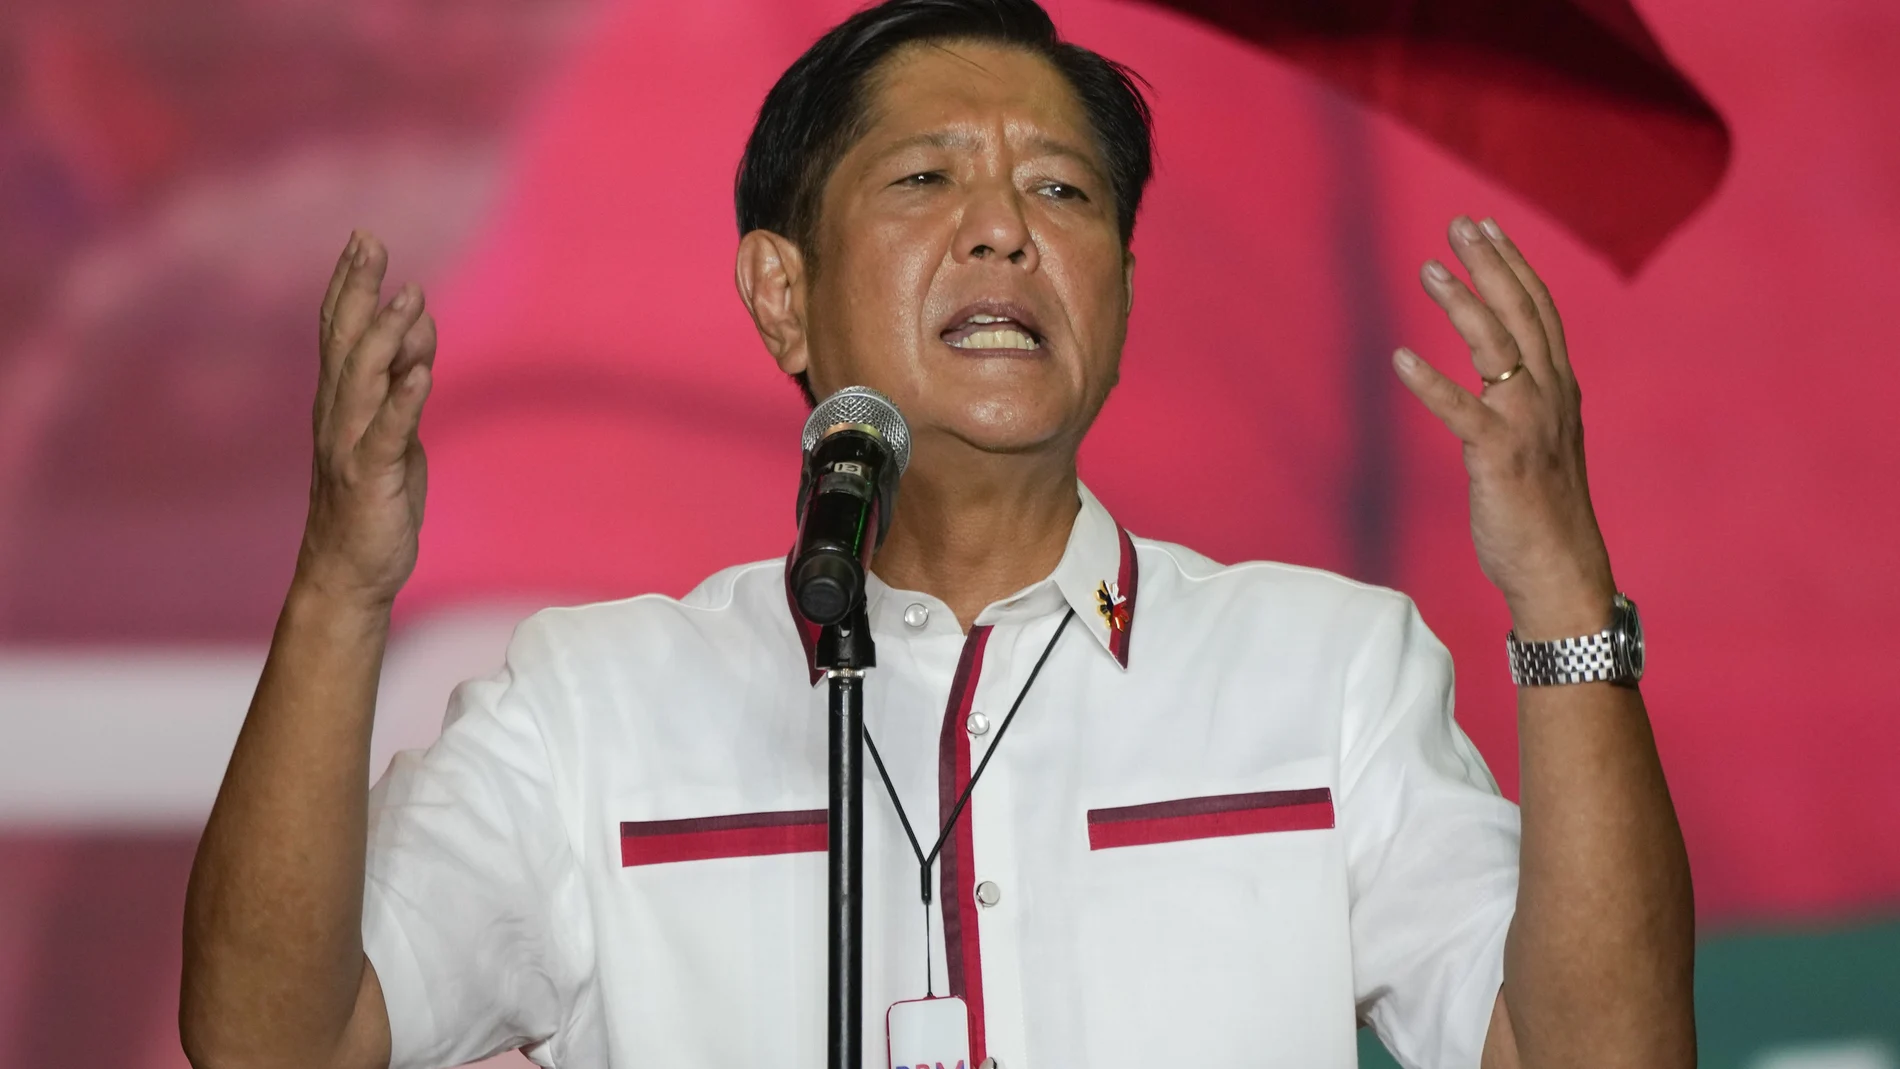 El candidato presidencial Ferdinand Marcos Jr